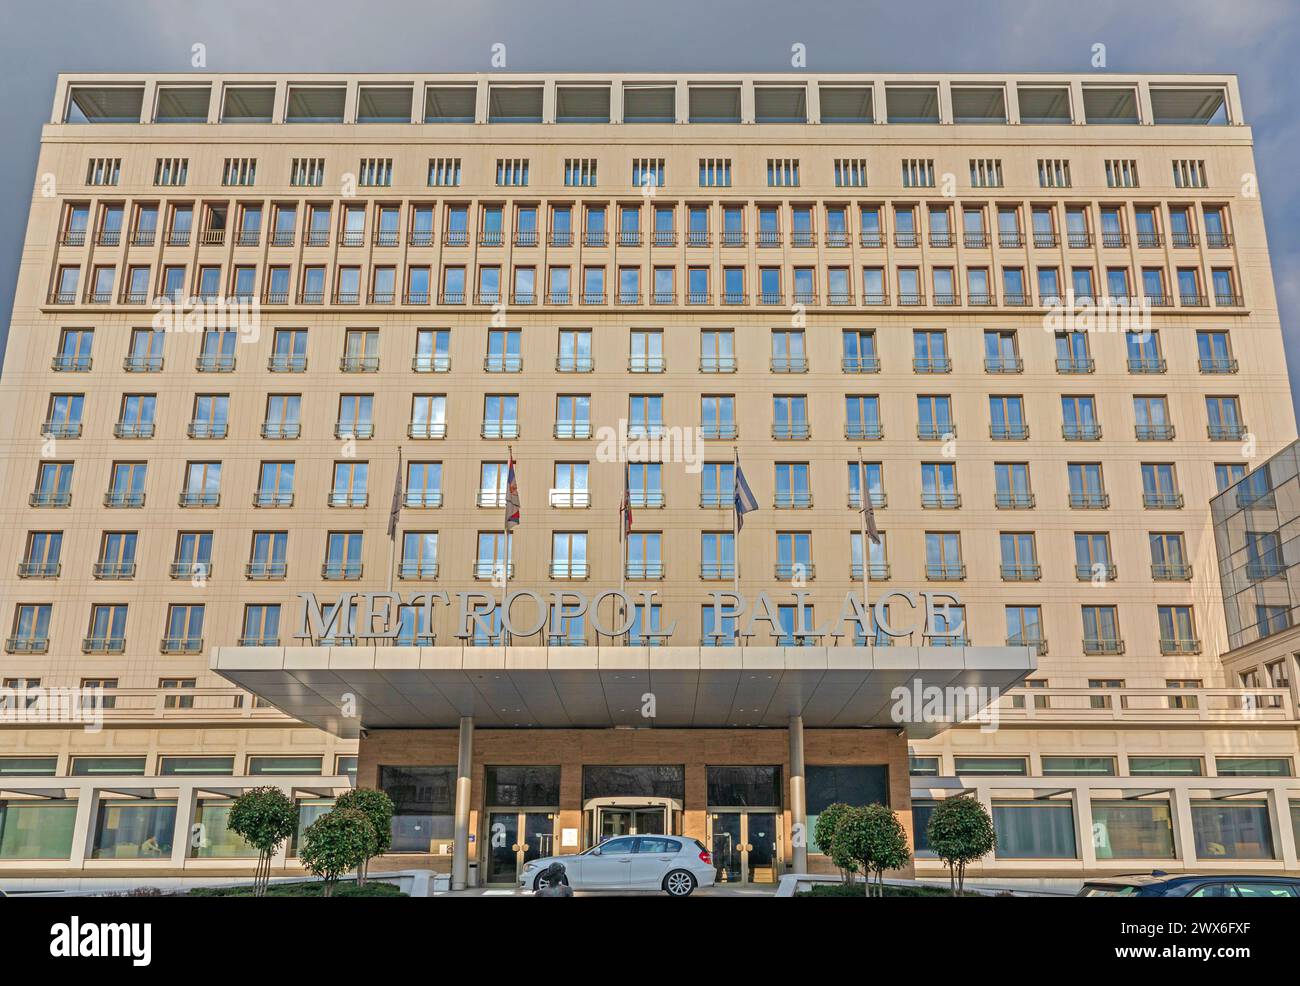 Belgrado, Serbia - 14 de febrero de 2021: Edificio histórico del hotel Metropol Palace en la ciudad capital. Foto de stock